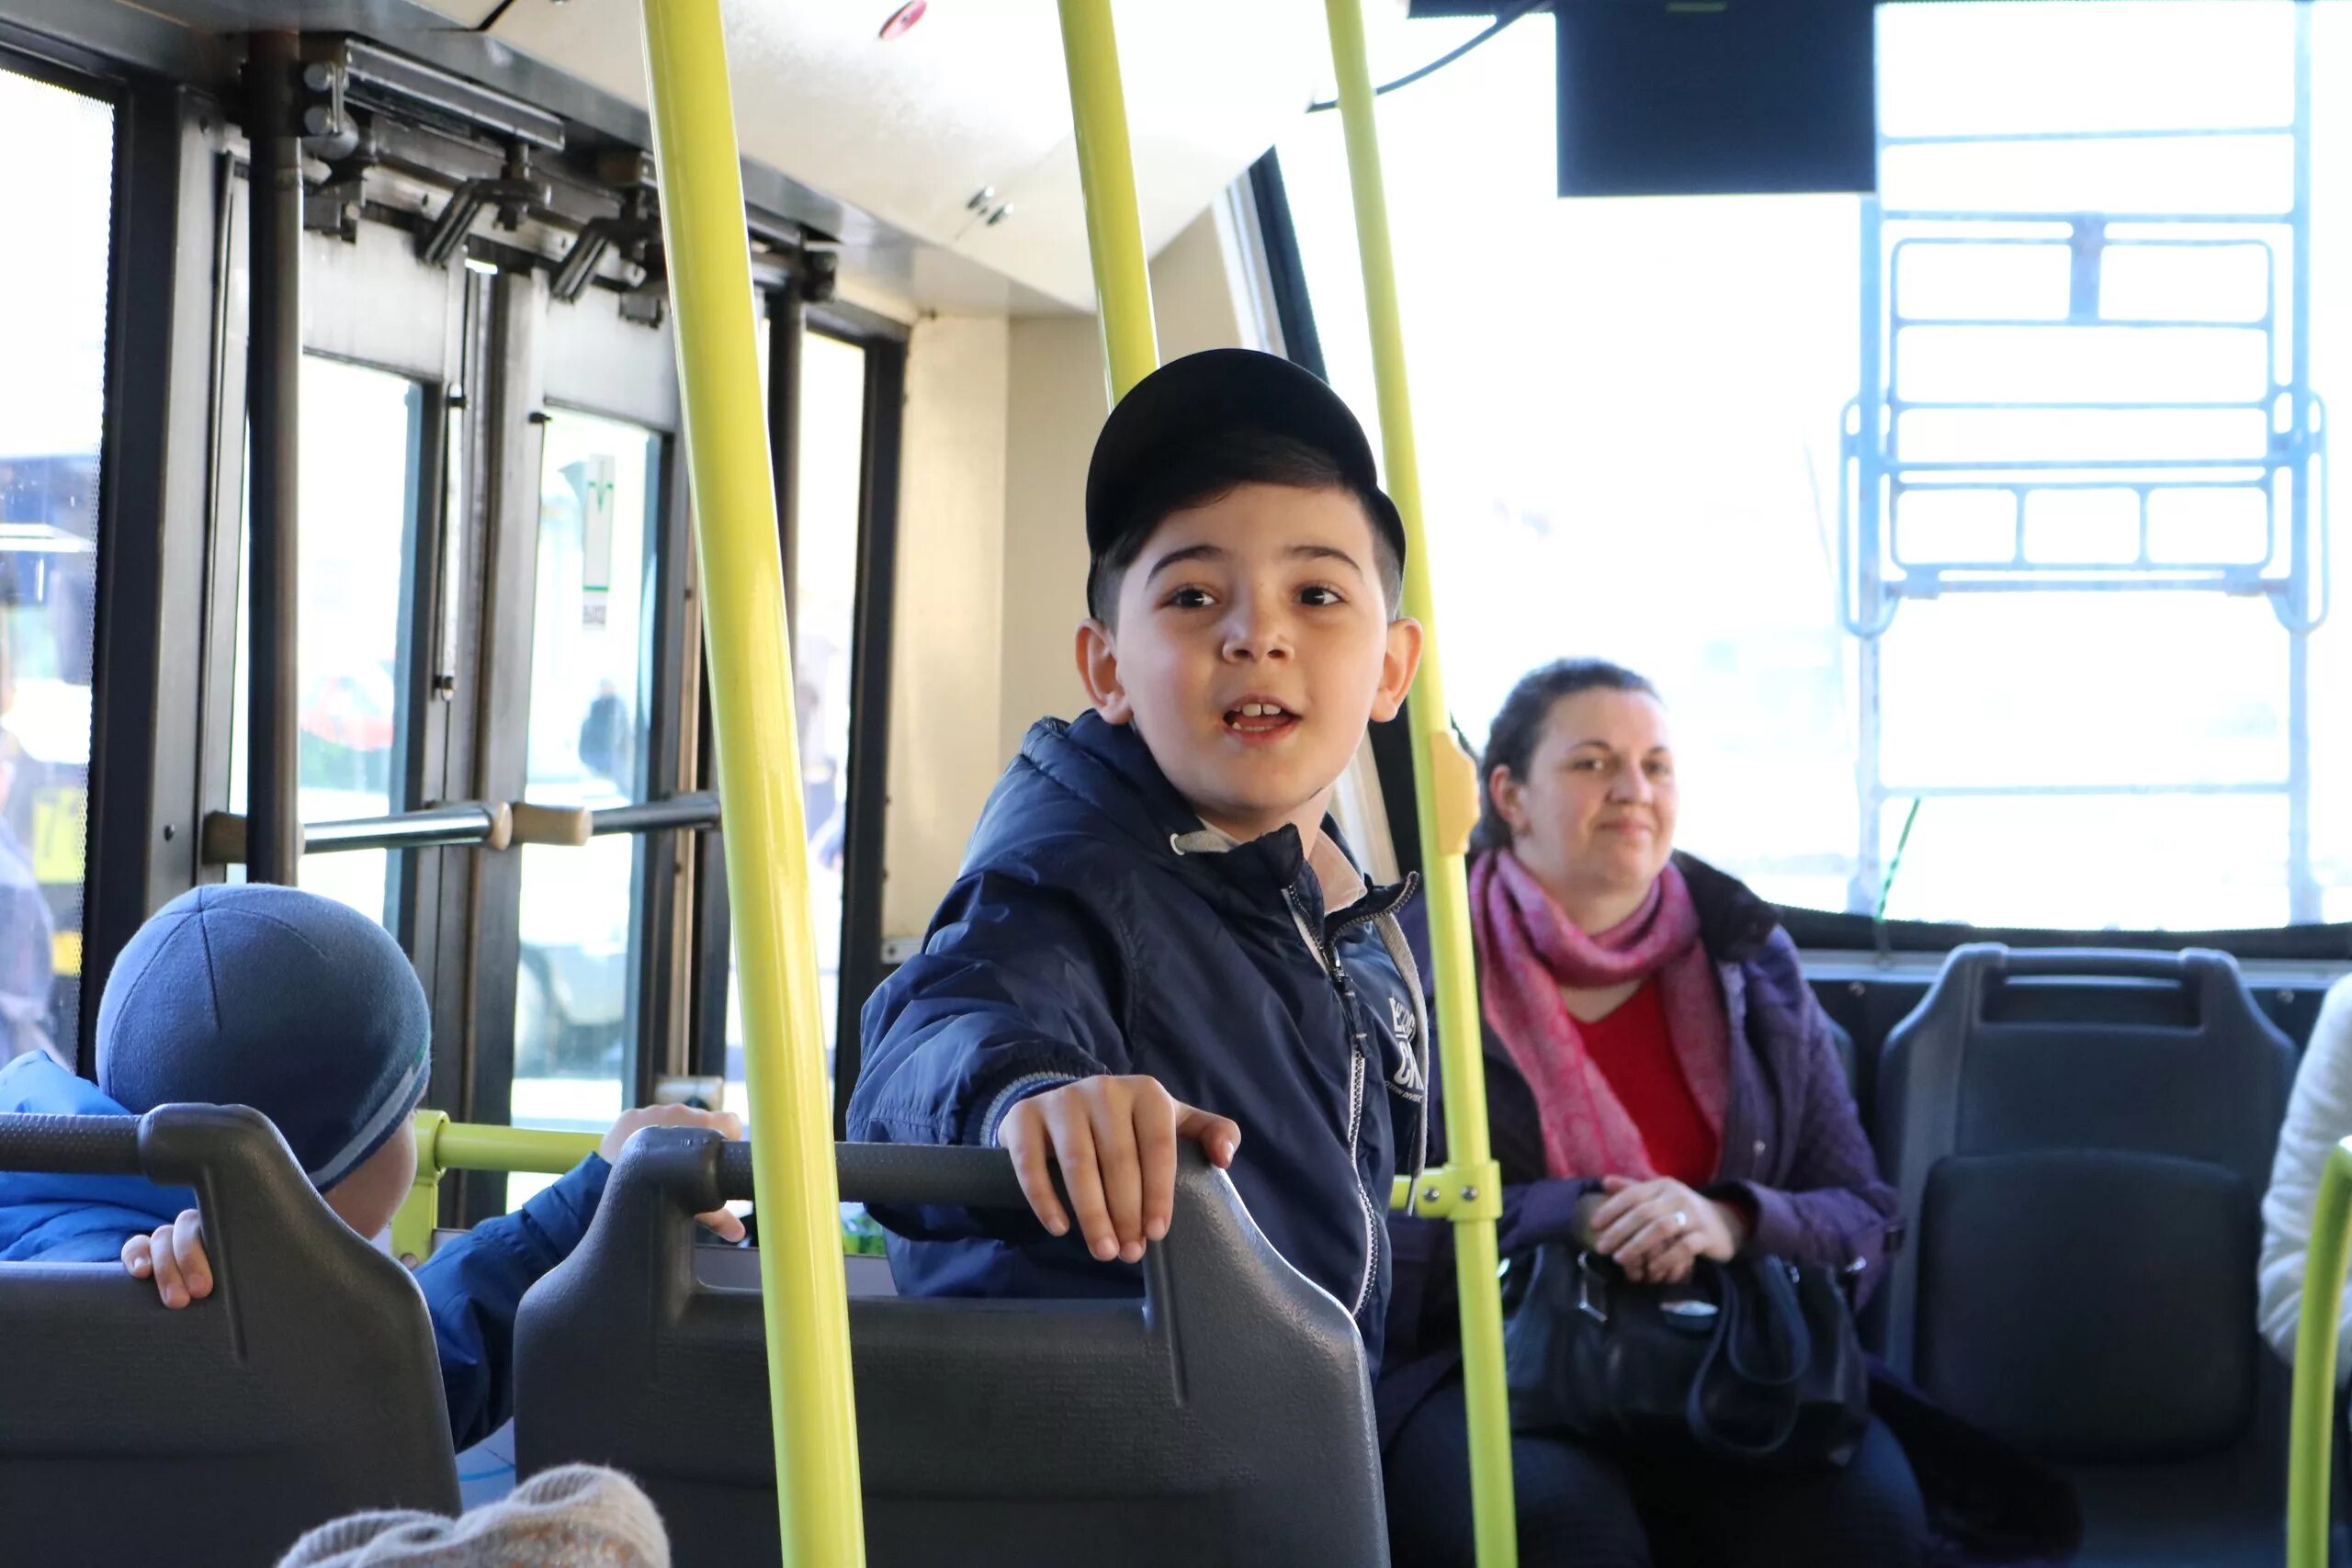 Ребенок едет в маршрутке. Автобус для детей. Общественный транспорт для детей. Школьники в автобусе. Подростки в автобусе.